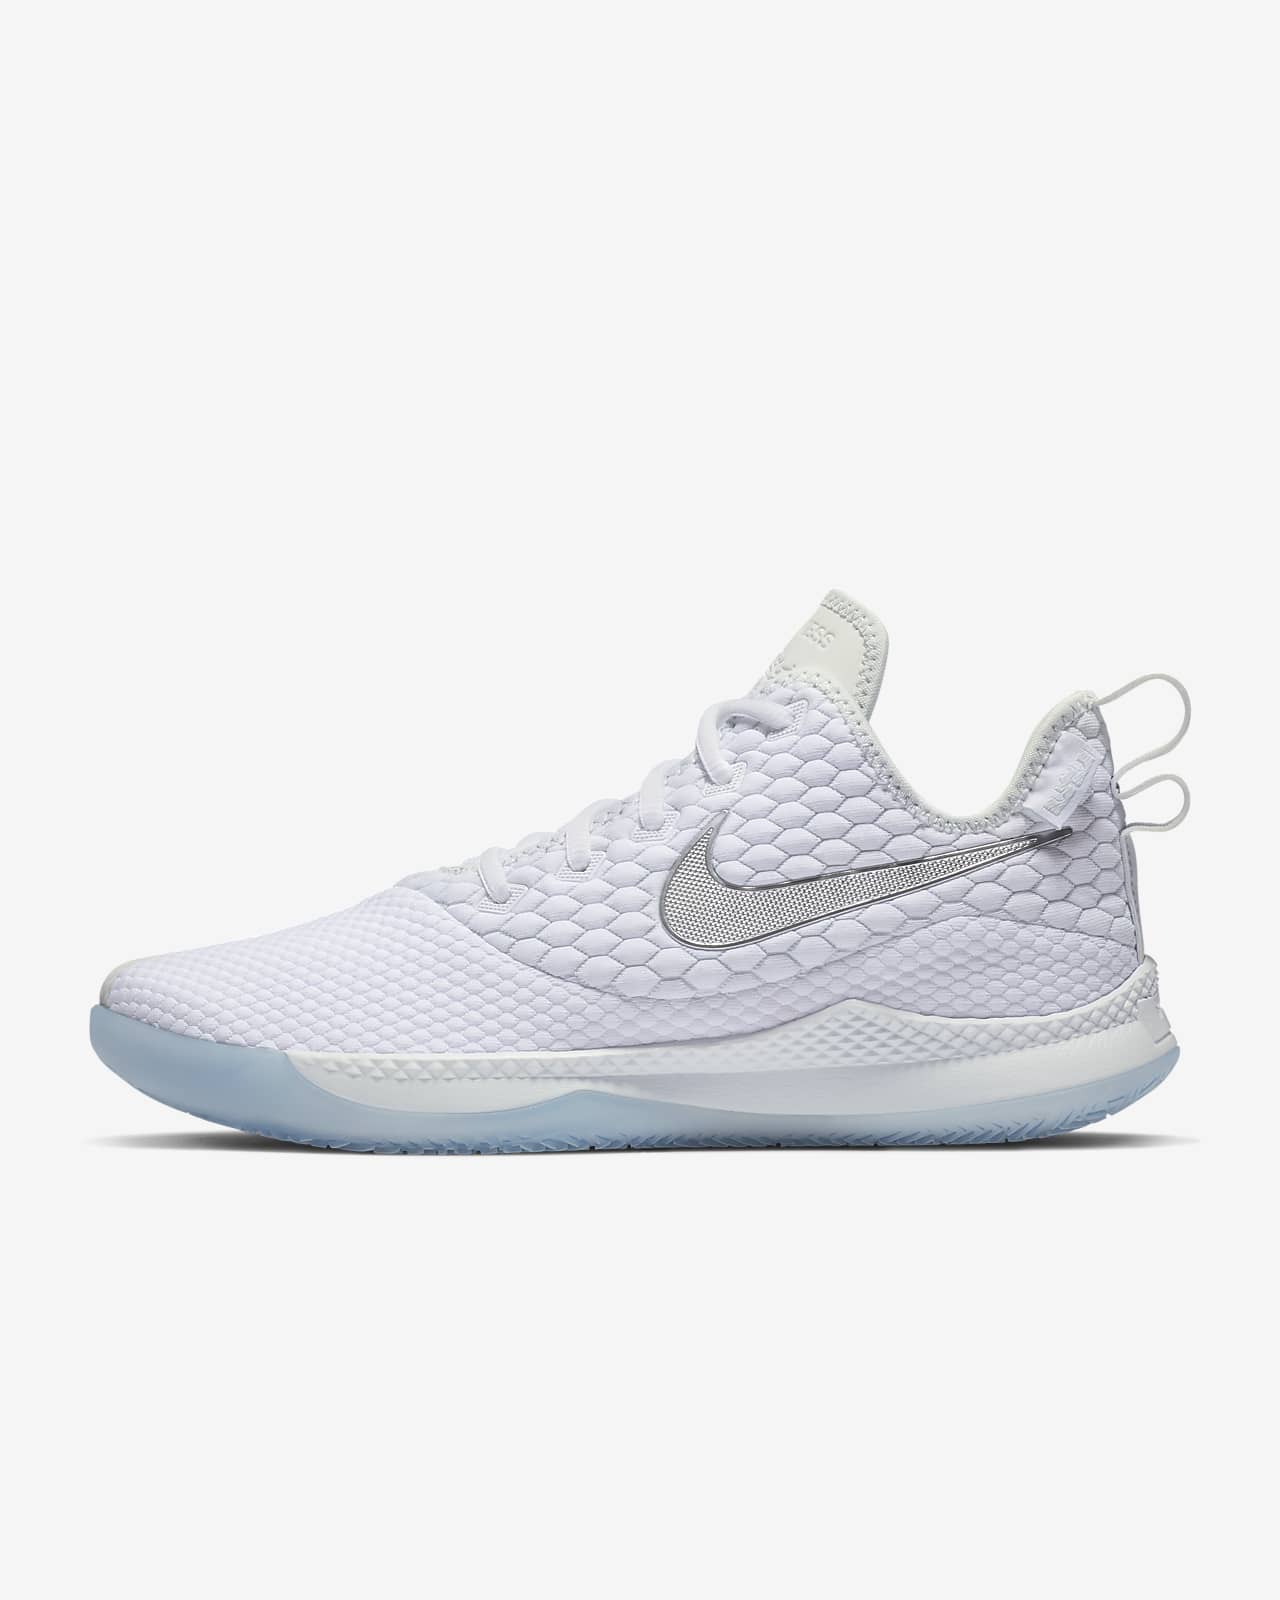 LeBron Witness III Men's Shoe. Nike DK